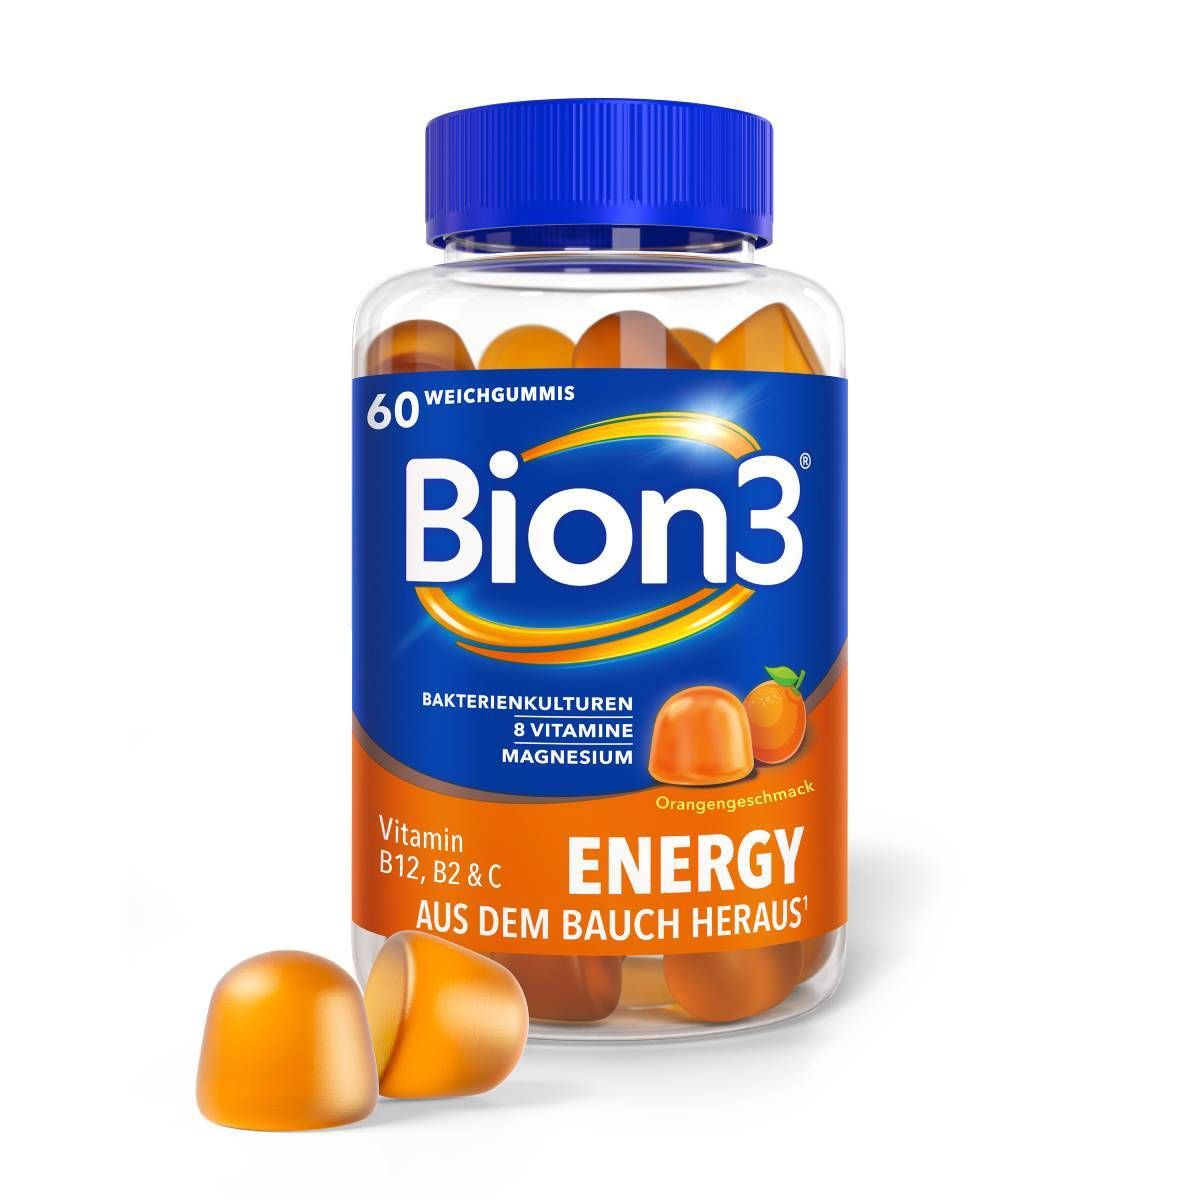 Bion3® Energy Weichgummis, Multivitamine mit Bakterienkulturen, Vitamin B12, C, D und Magnesium - Jetzt 30% Cashback sichern